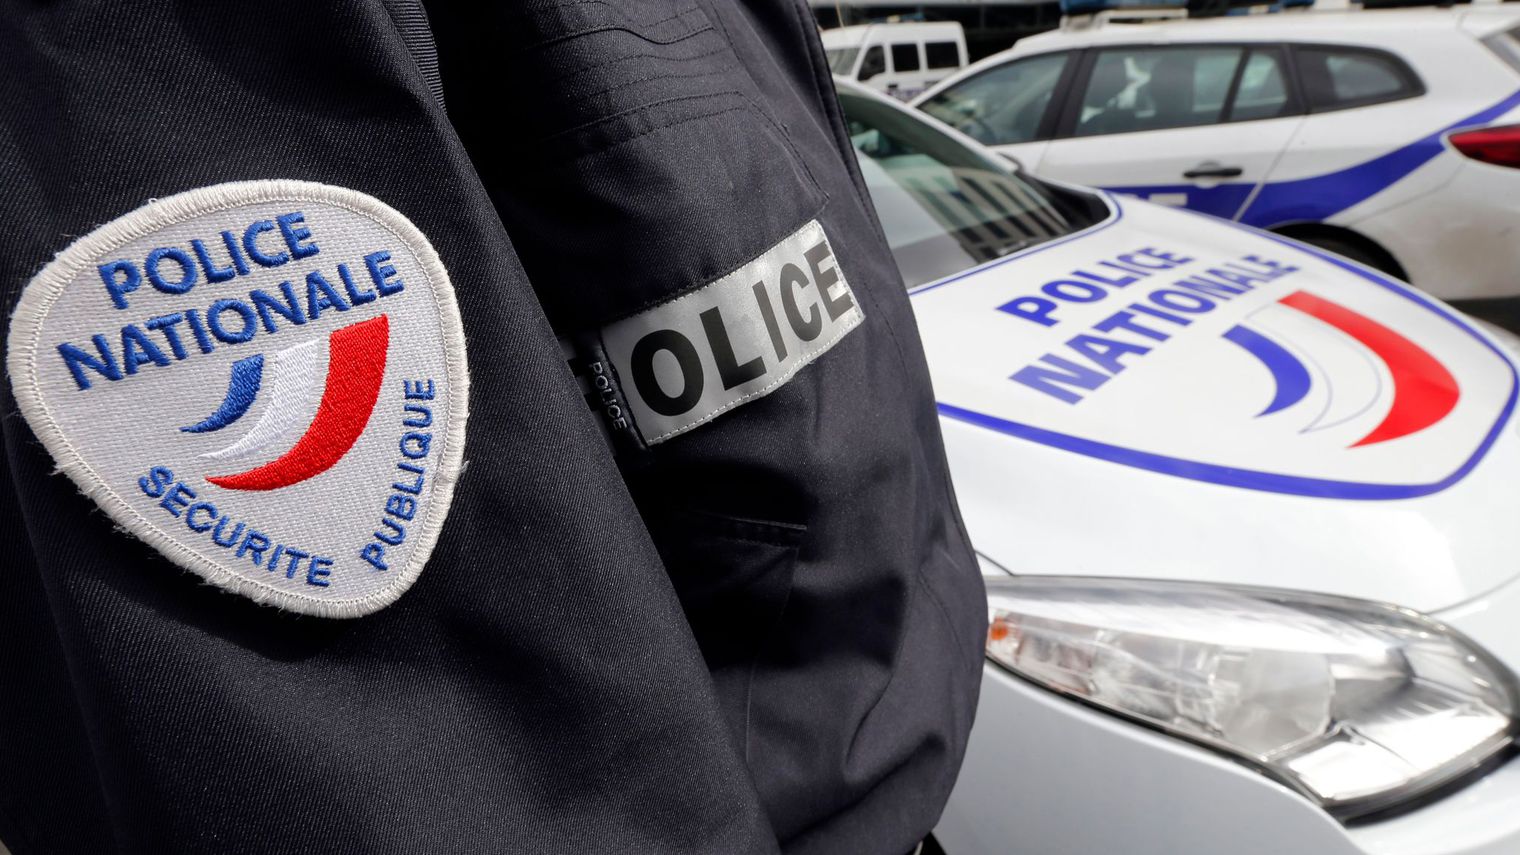 Trafic de drogue: Deux jeunes Guyanais interpellés à Paris avec de la cocaïne dans leur caleçon